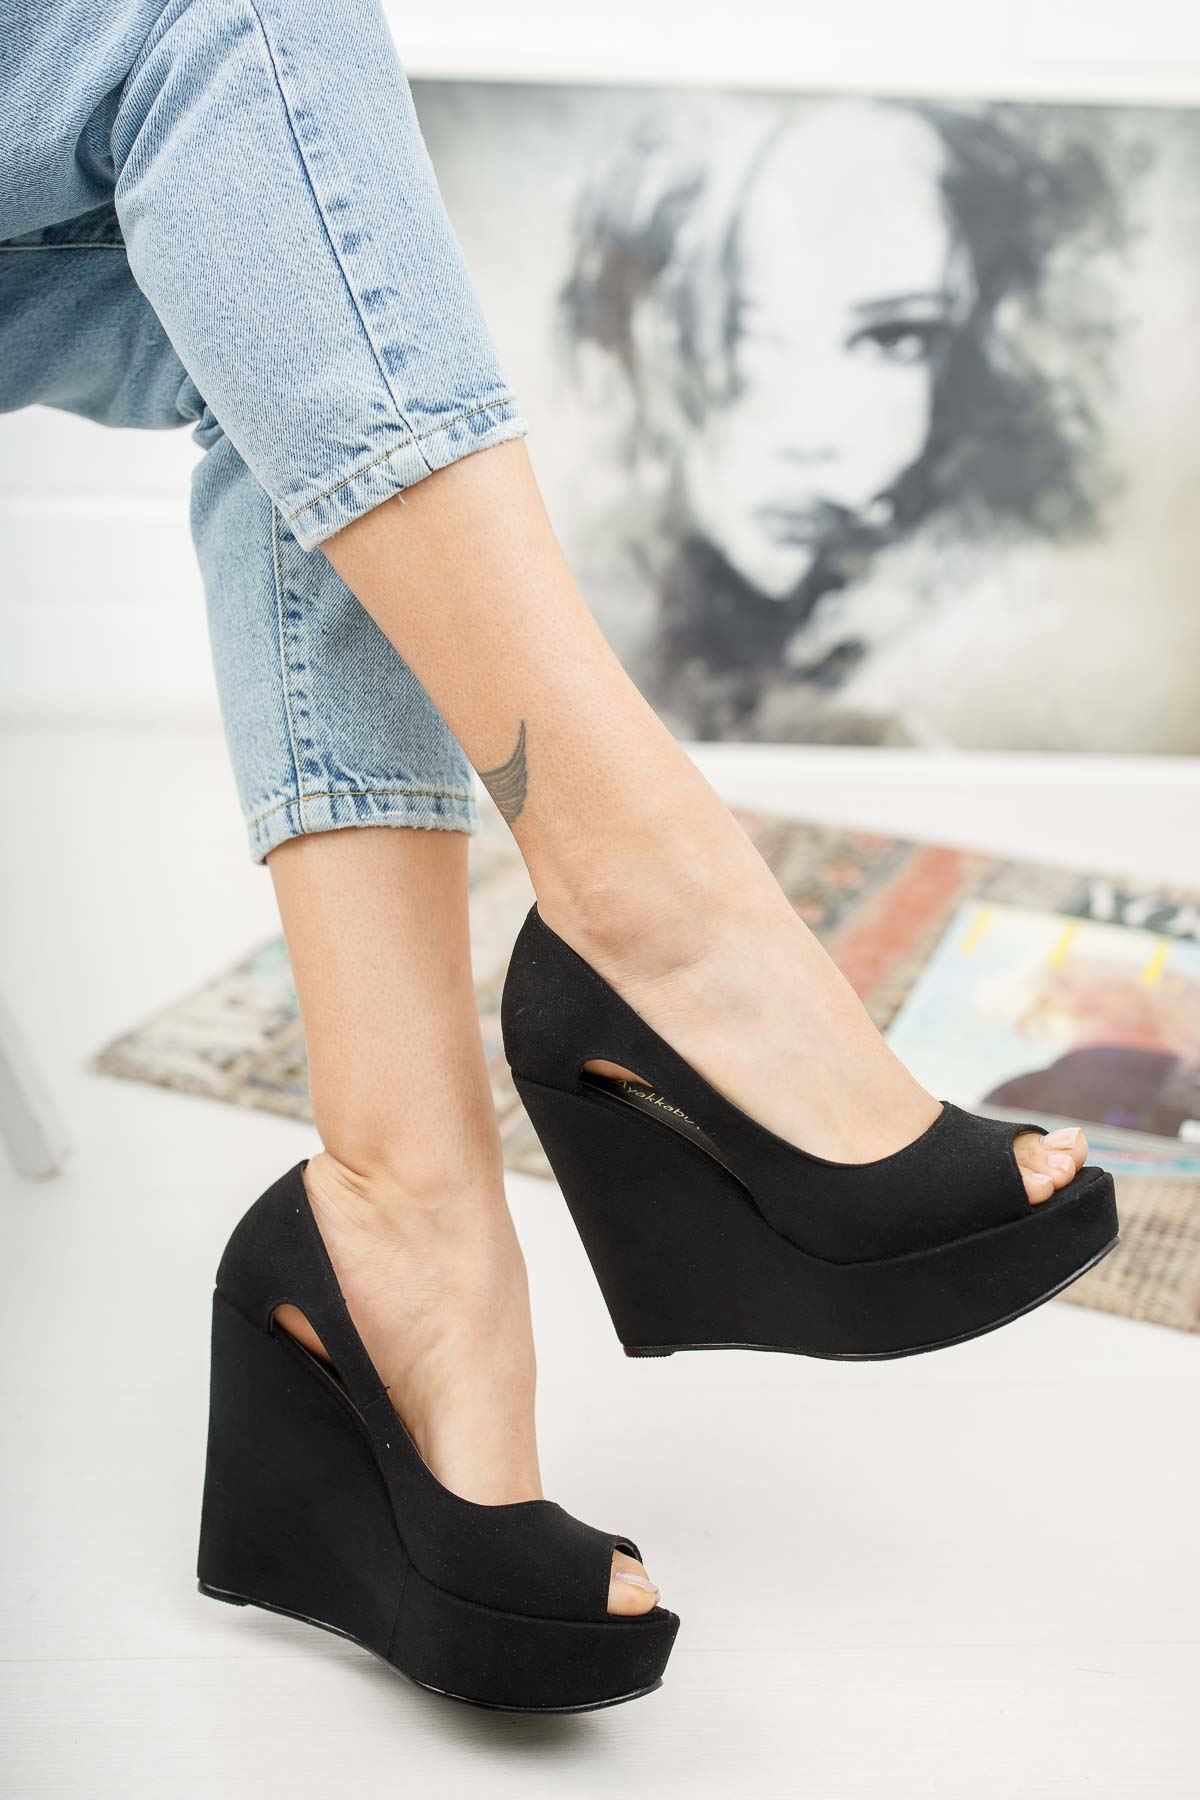 Cosef Siyah Süet Dolgu Topuklu Kadın Ayakkabı